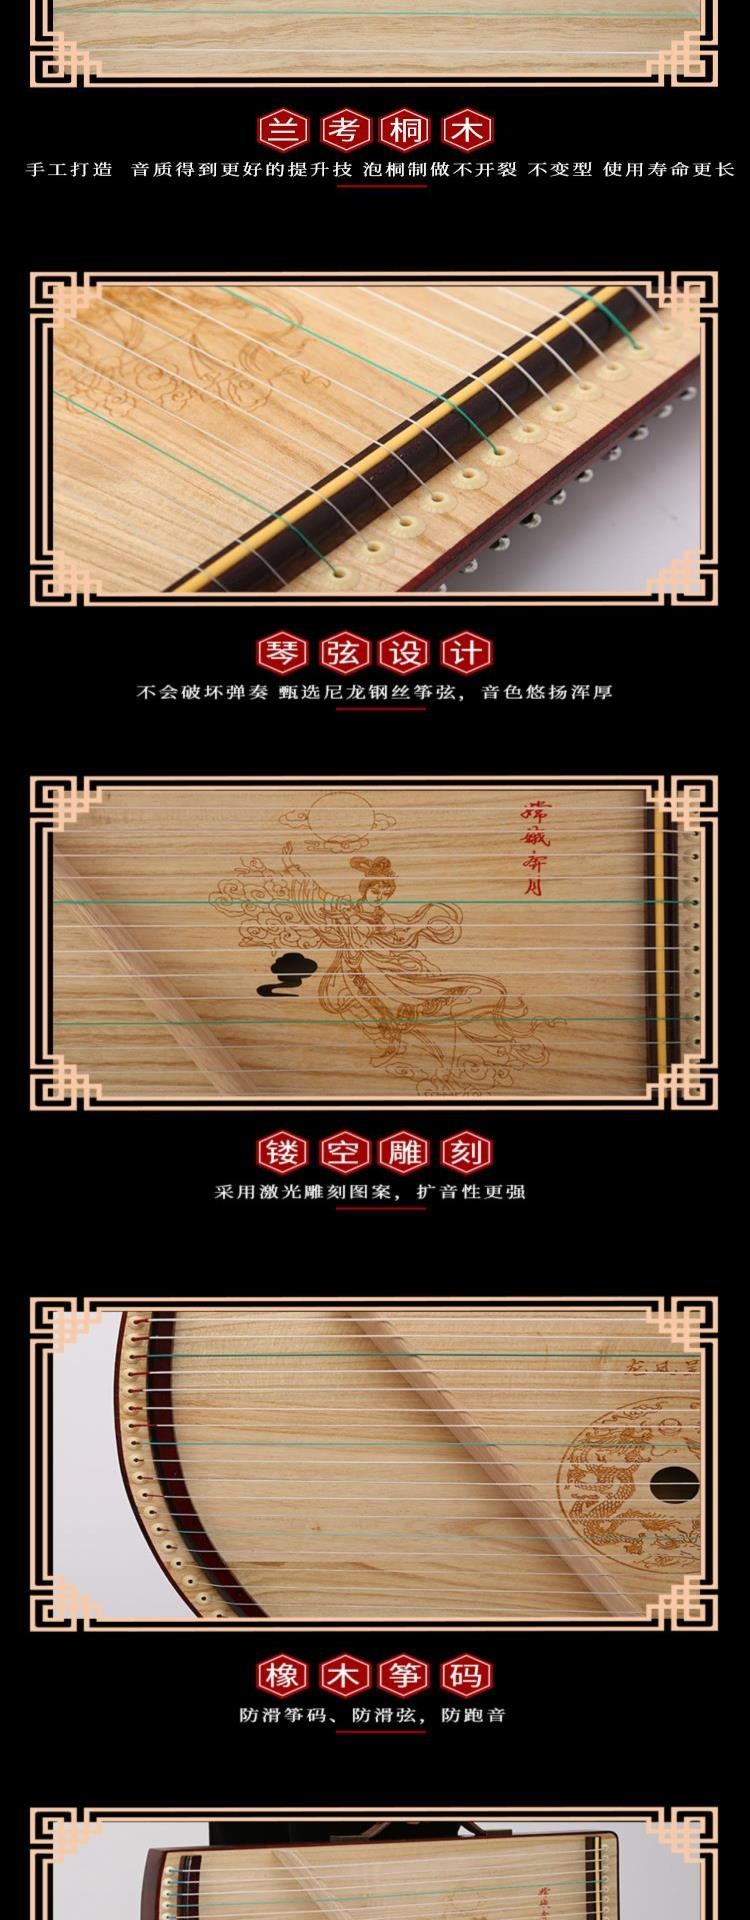 Dây nhỏ Guzheng thiết bị luyện ngón tay Guqin trẻ em linh hoạt luyện tập luyện dụng cụ sức mạnh tỷ lệ phổ quát mini - Nhạc cụ dân tộc